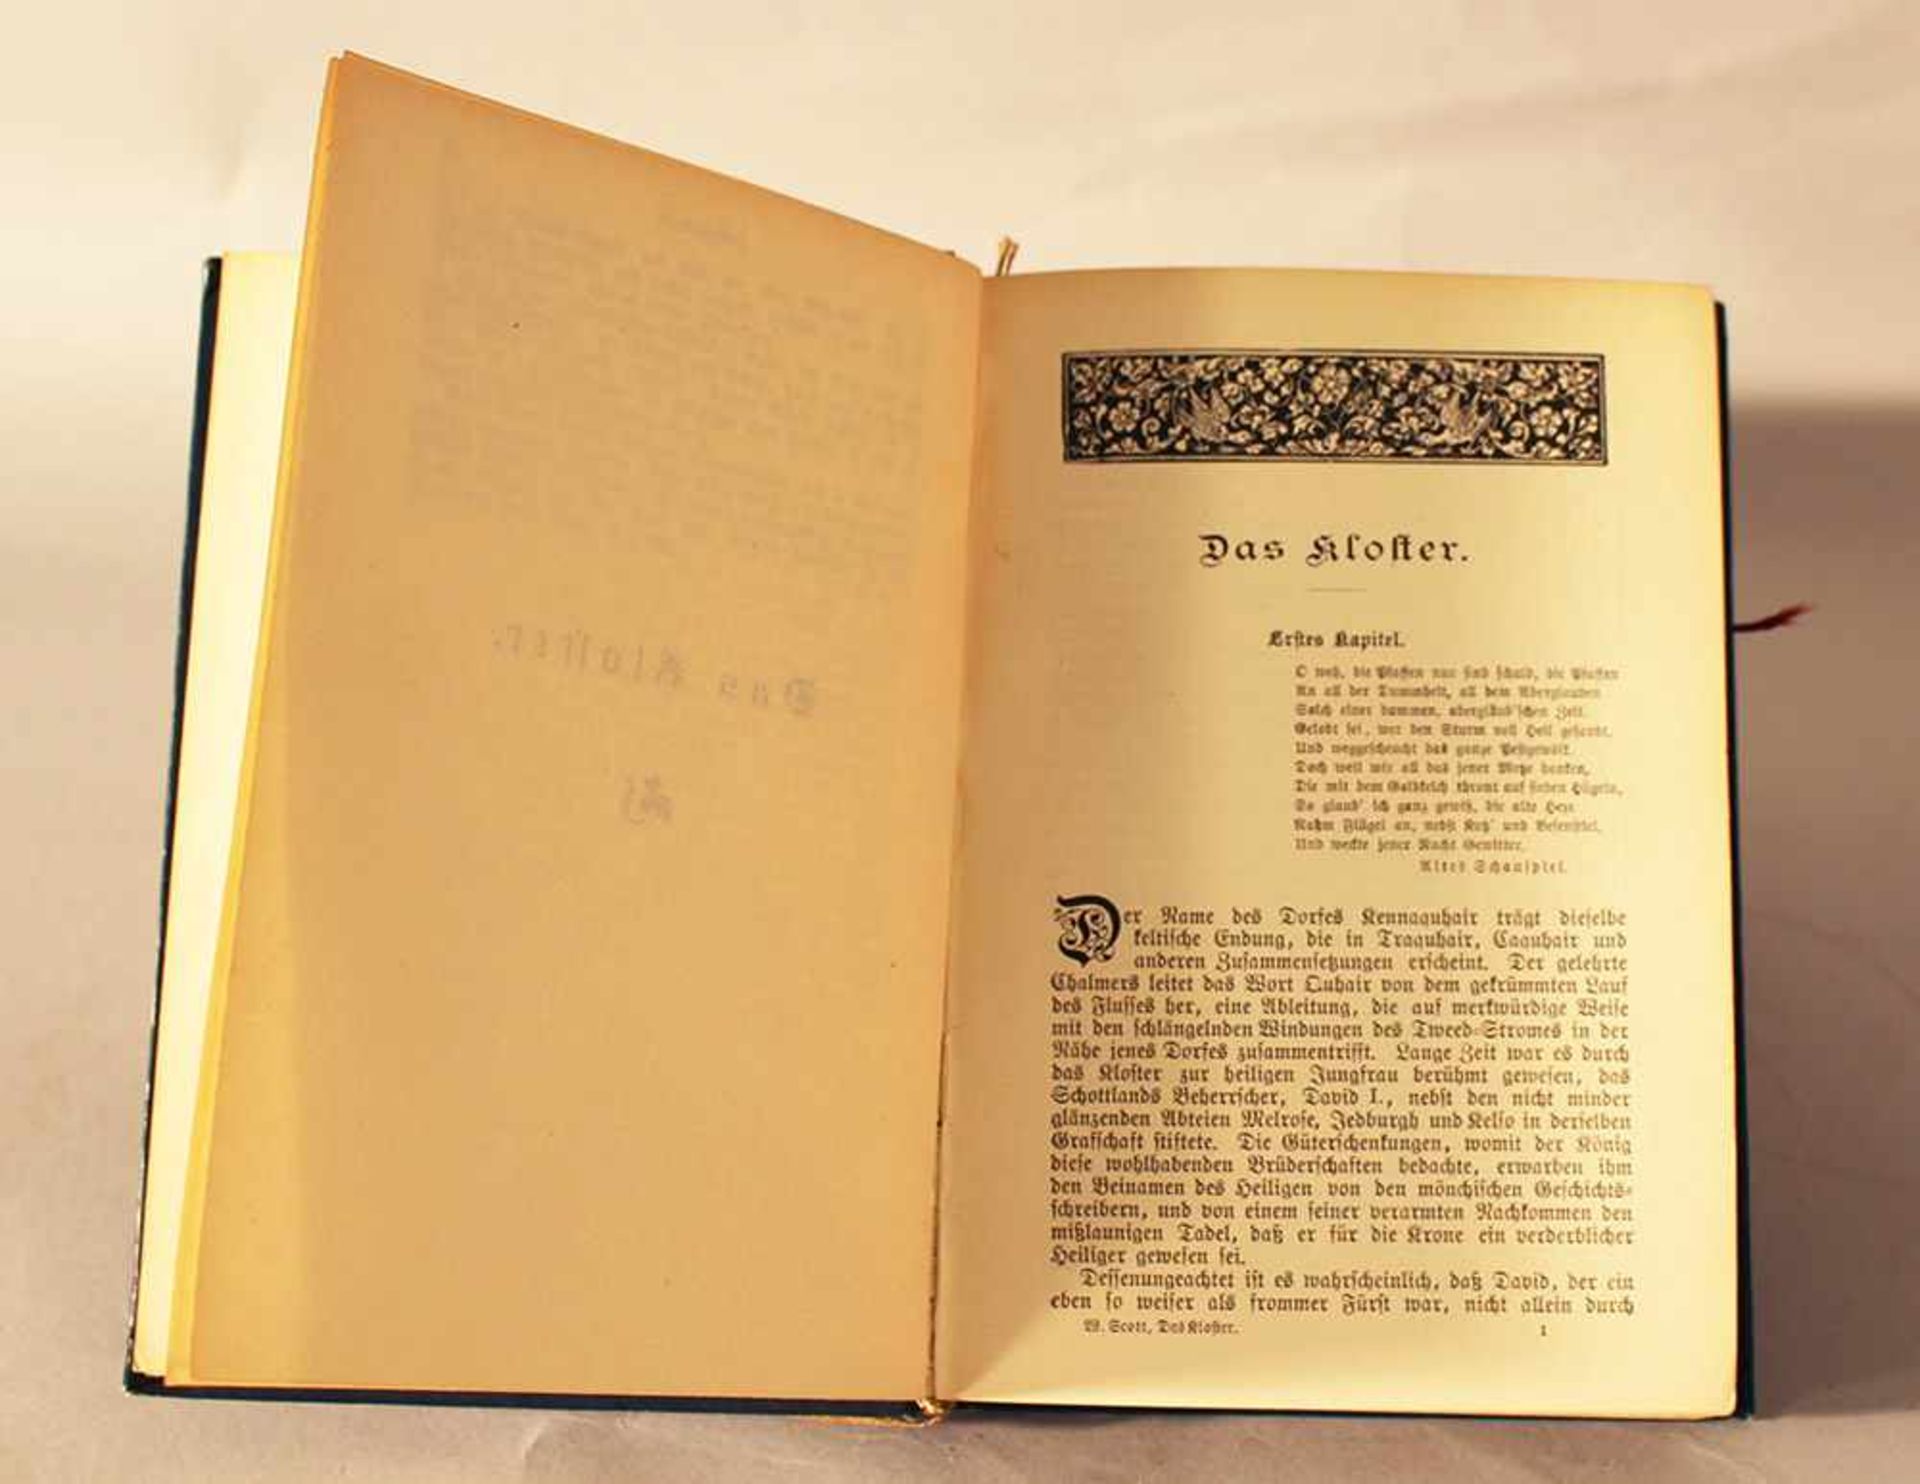 Sir Walter Scott, Das Kloster, edited by Theodor Bergfeld, published by Otto Hendel, Halle, 19th - Bild 3 aus 3